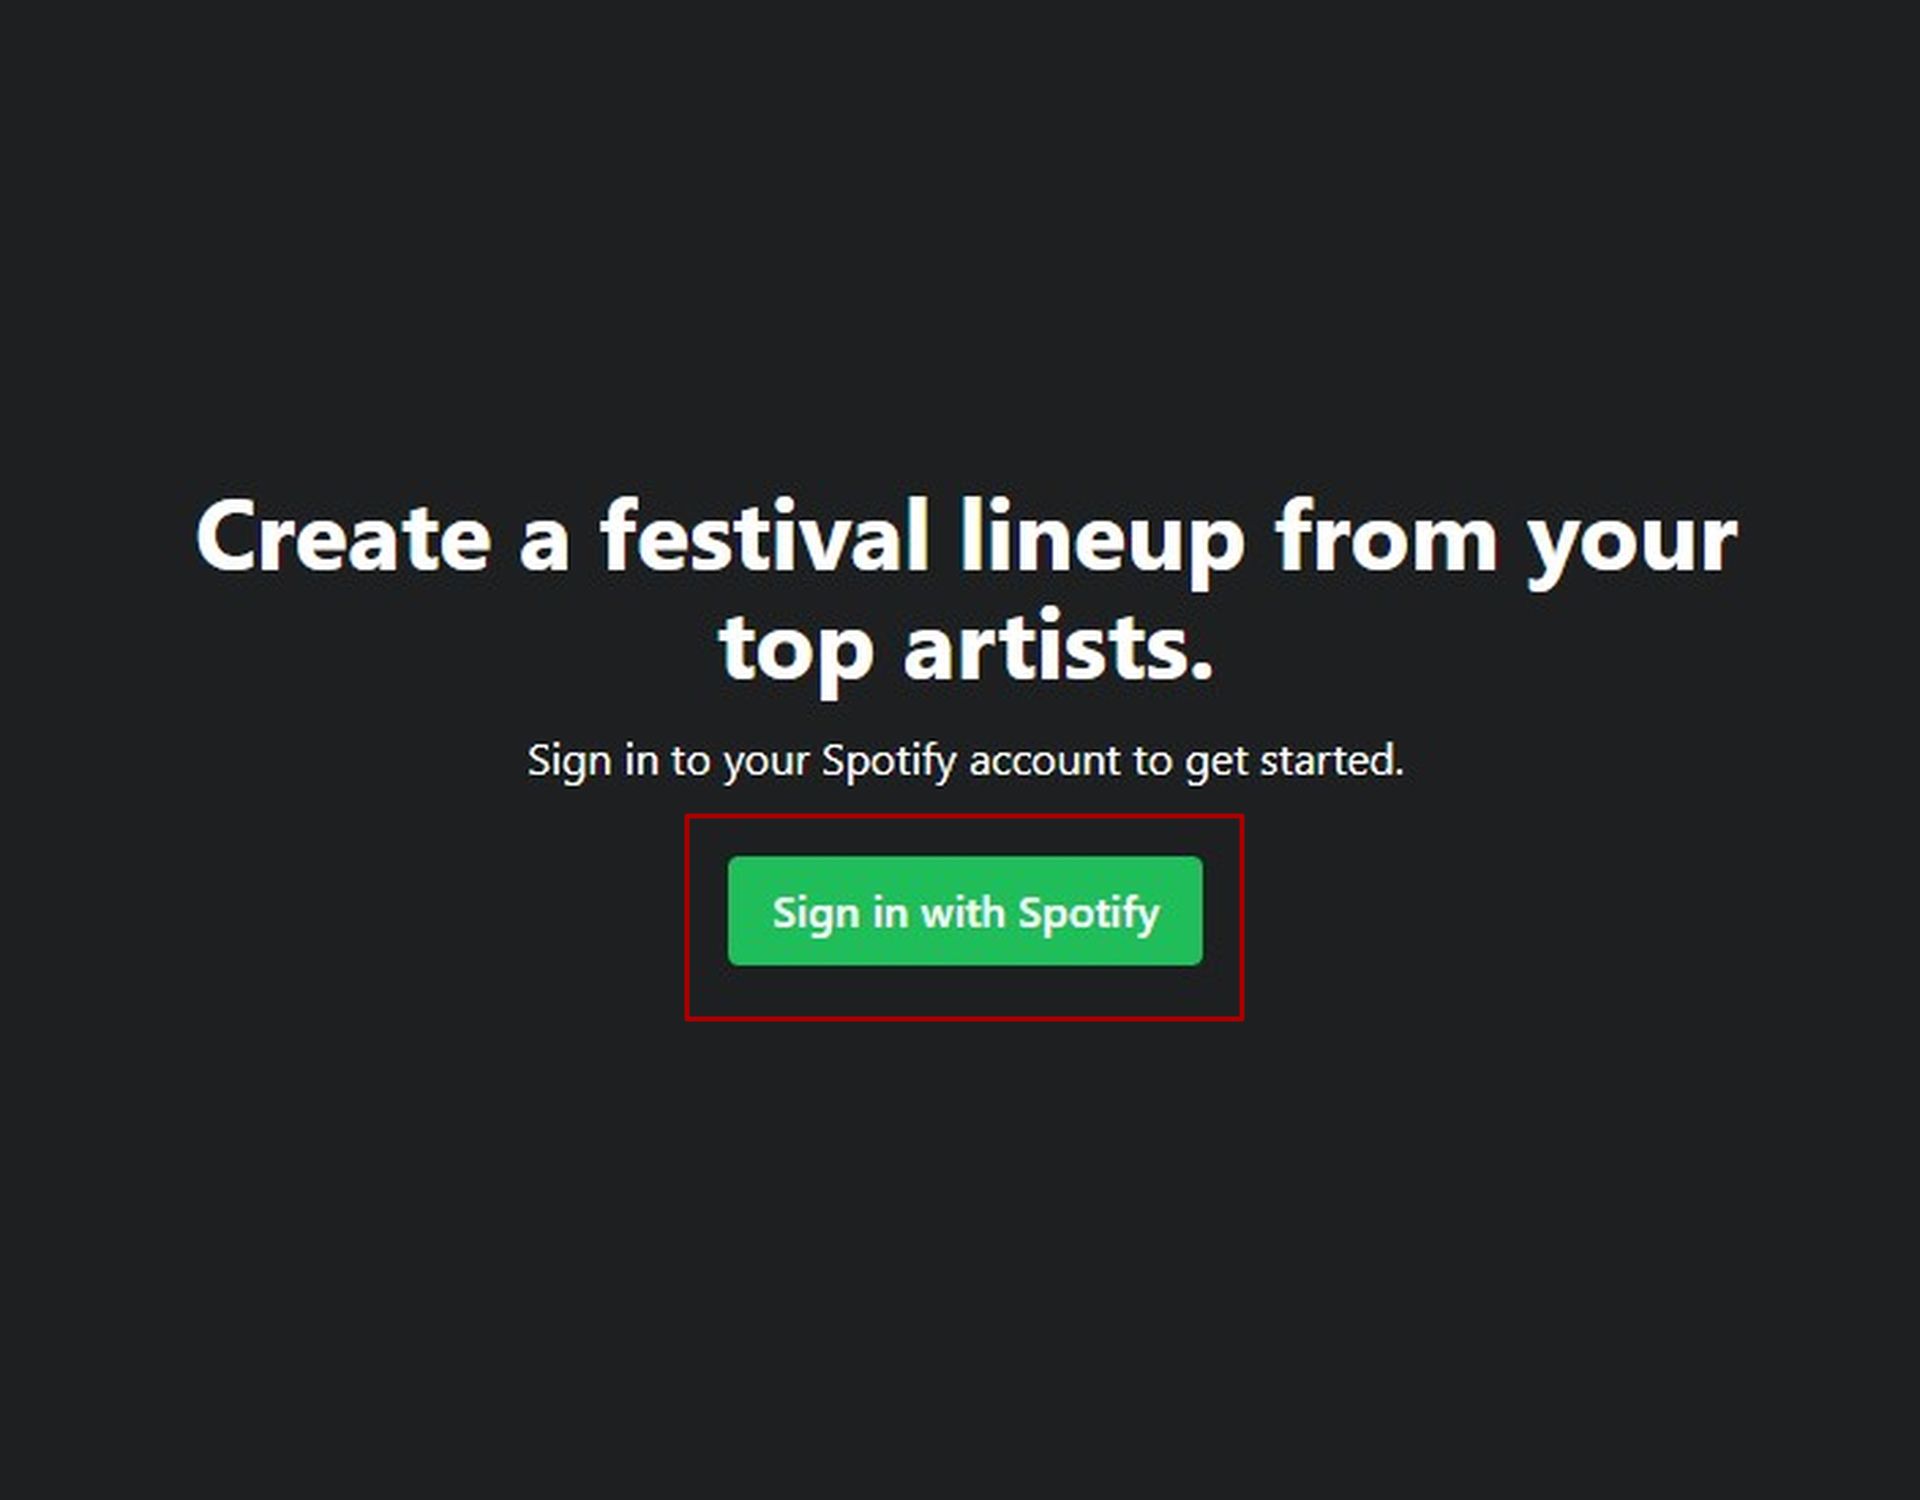 Tout ce que vous avez à faire pour créer votre propre programmation Spotify Festival est de cliquer sur le bouton Se connecter avec Spotify dans l'application Instafest 2022.